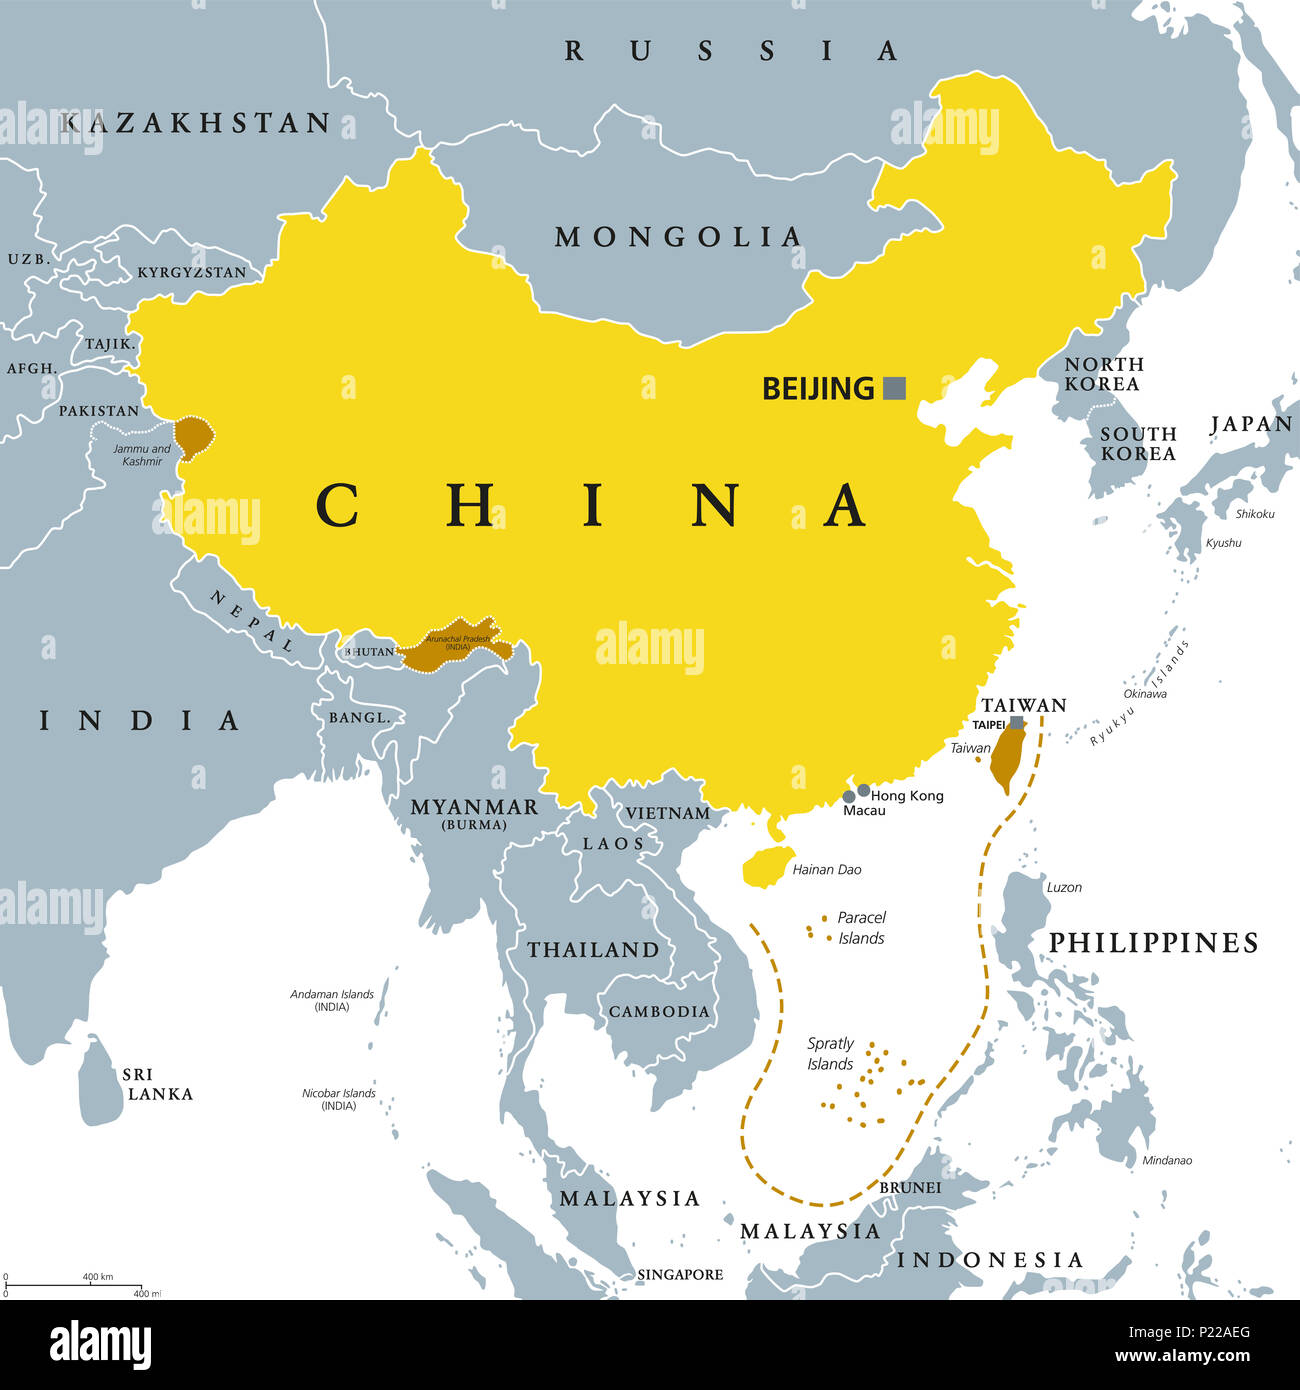 République populaire de Chine, République populaire de Chine, gris. Zone contrôlée par la Chine dans la couleur jaune, et réclamé, mais les régions non contrôlées indique la couleur marron. Banque D'Images